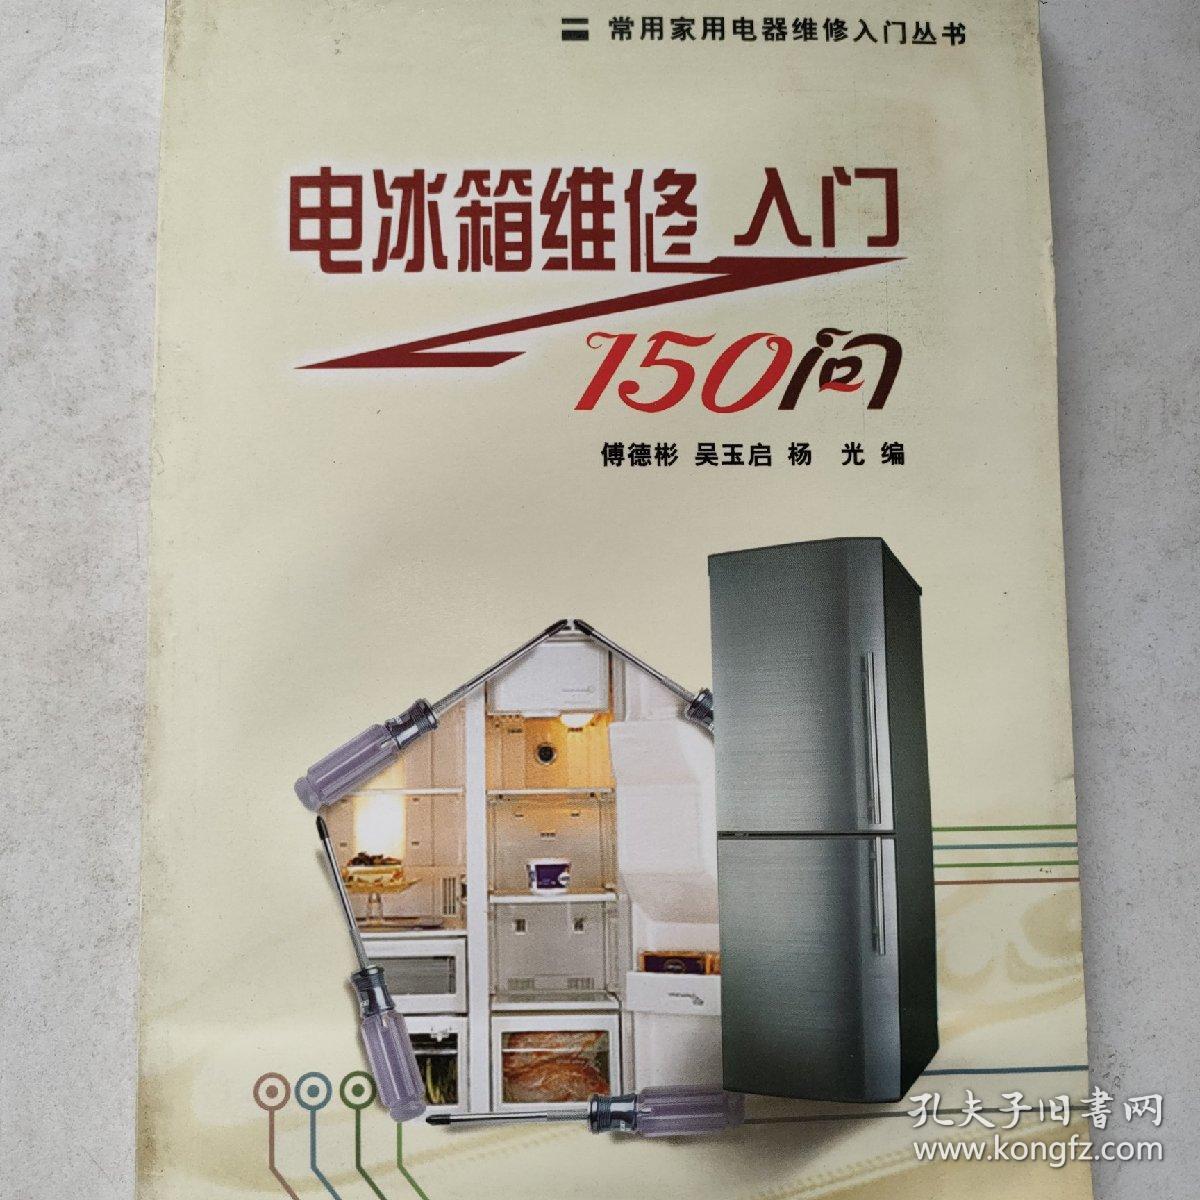 电冰箱维修入门150问/常用家用电器维修入门丛书